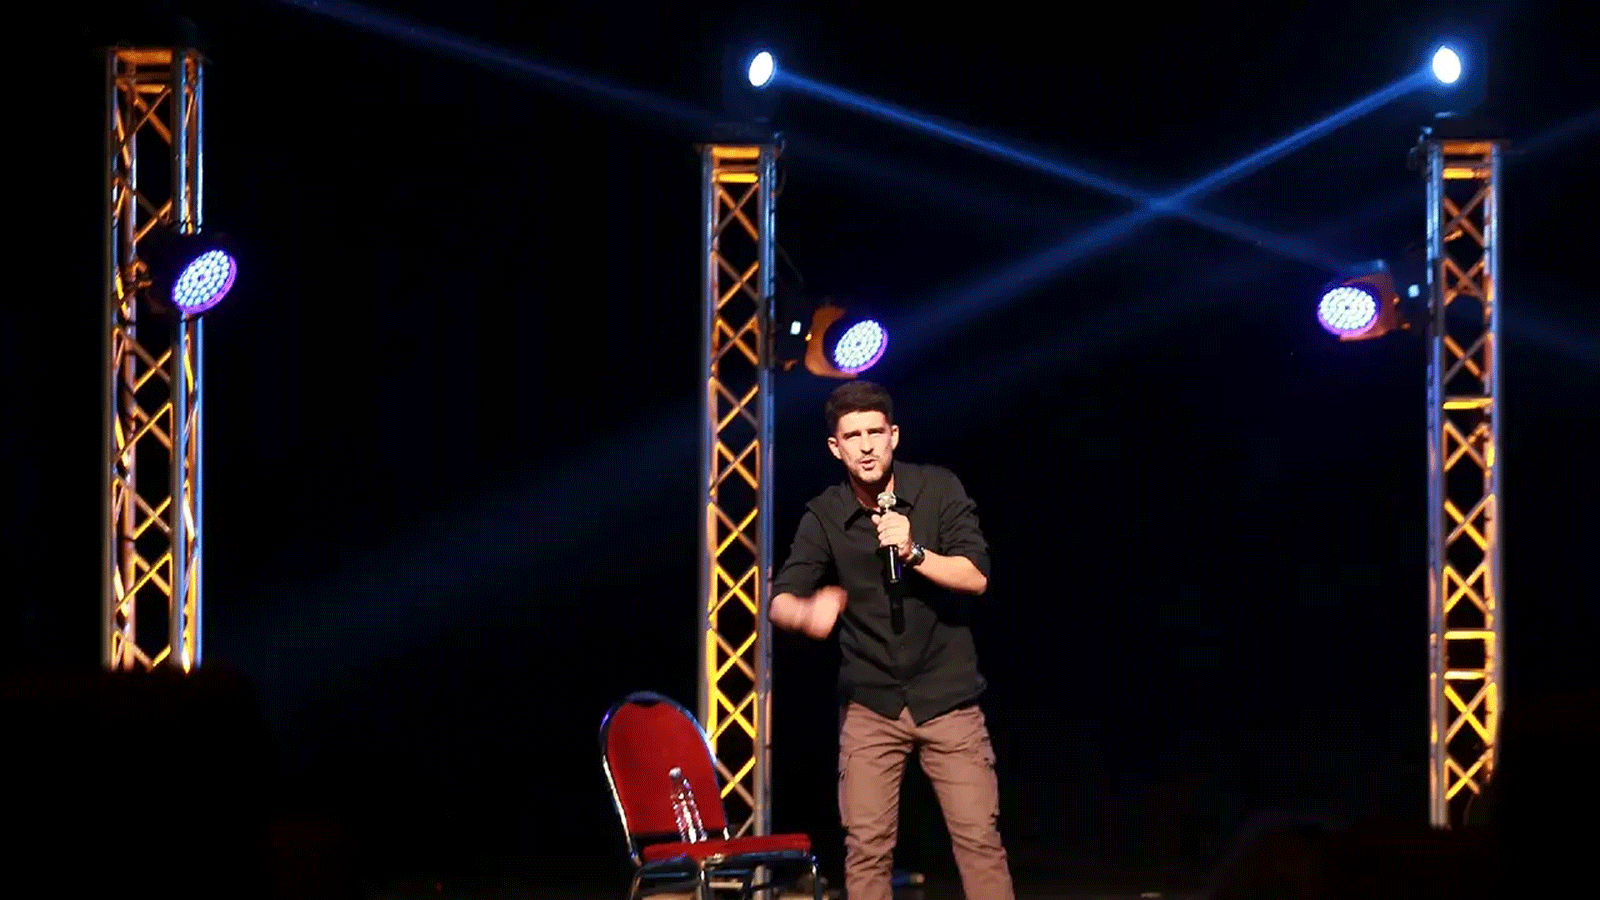 يوسف البطاينة، الذي حضر ورش عمل تدريب الضحك في نادي عمان للكوميديا ​​على المسرح في مسرح الشمس في 11 آذار\مارس 2023 في عمان، الأردن